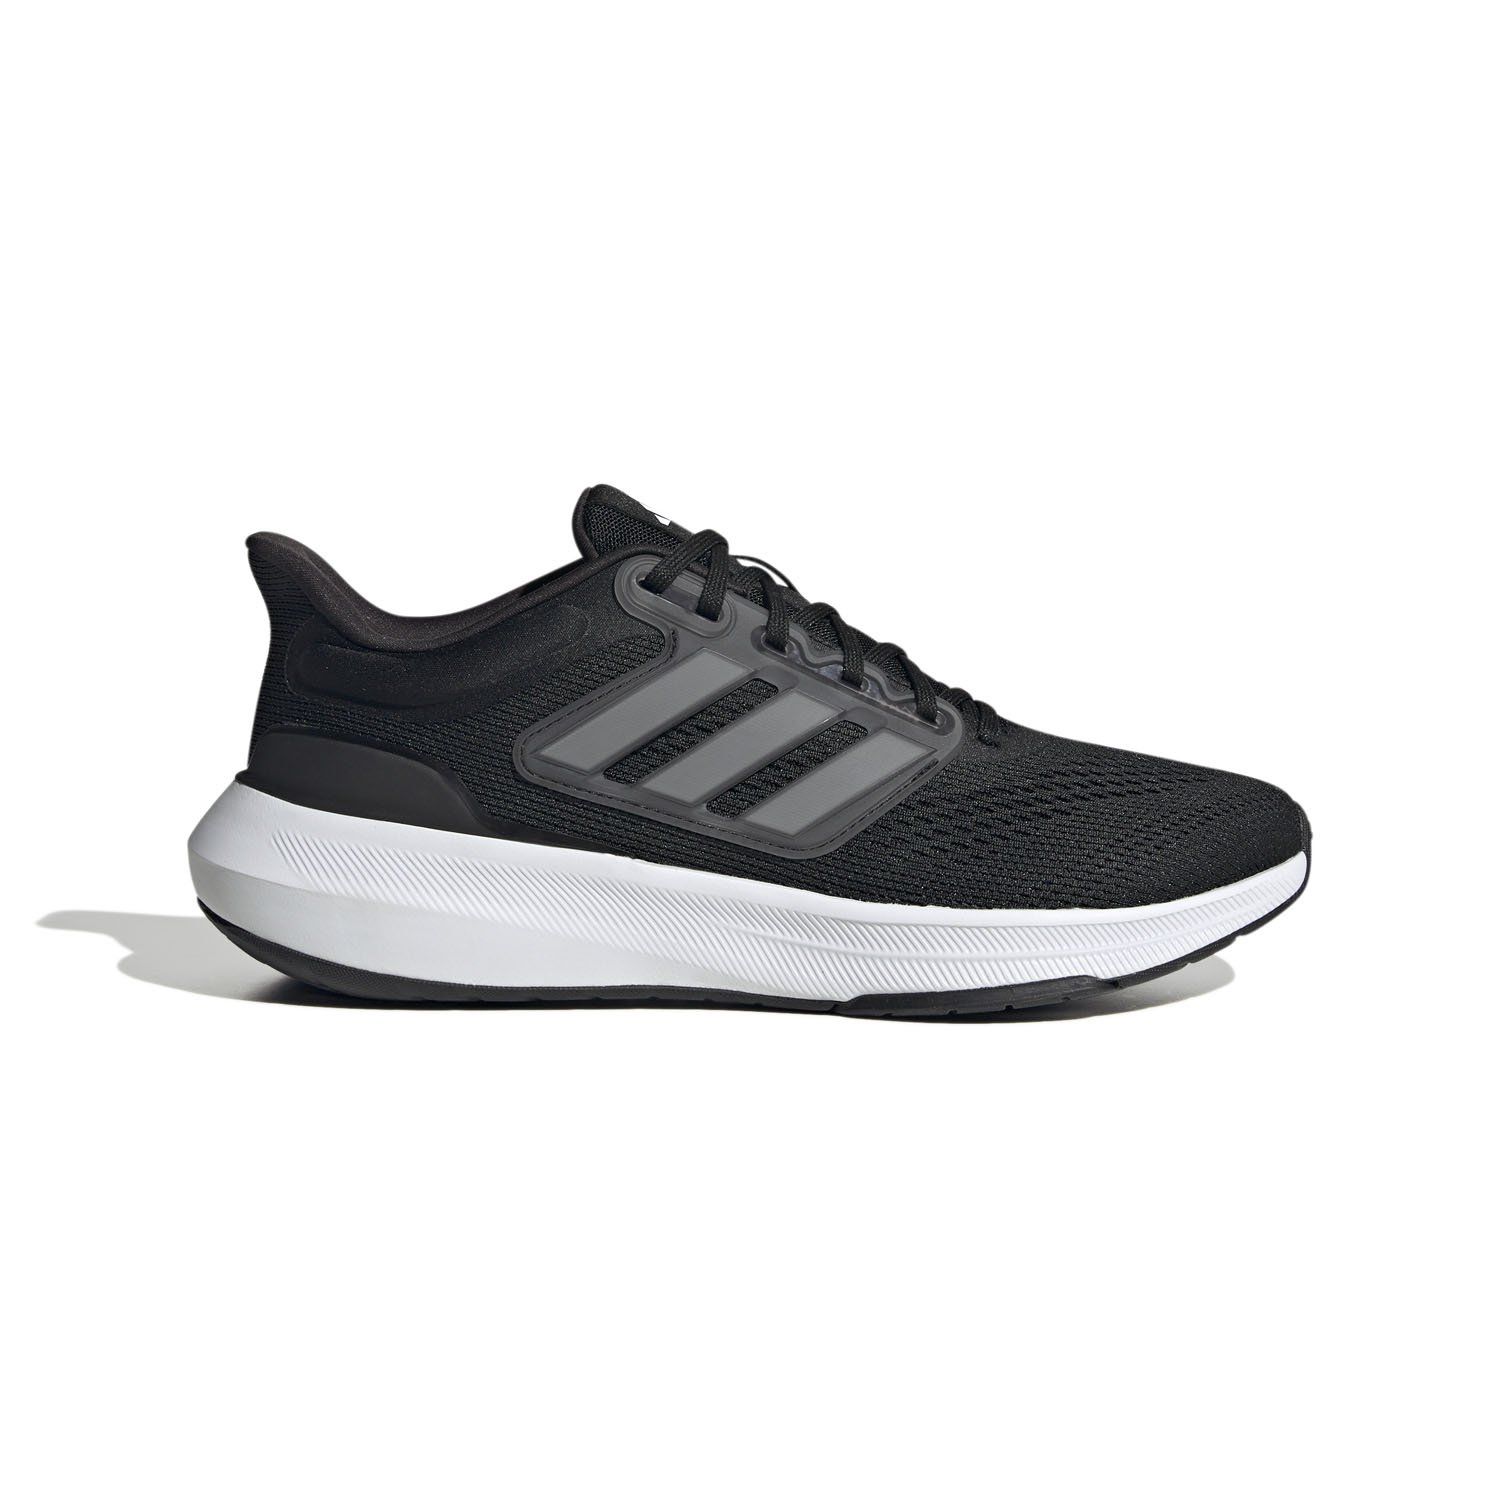 Adidas Ultrabounce Erkek Yol Koşu Ayakkabısı - Siyah - 1